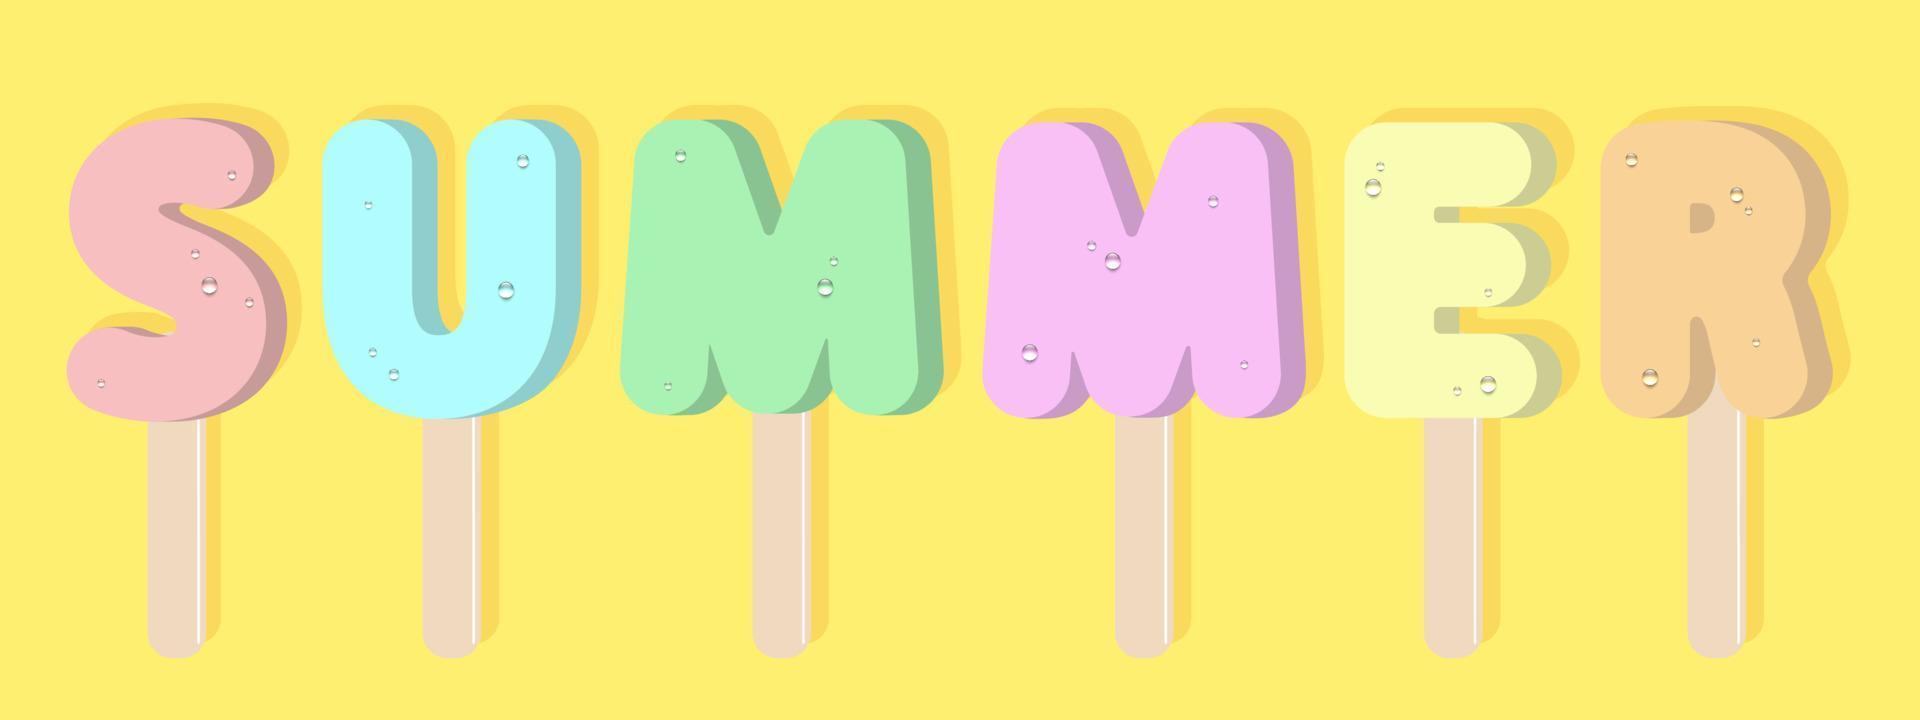 letras de helado de verano en los palos de madera. postre helado colorido con gotas de agua. diseño vectorial vector